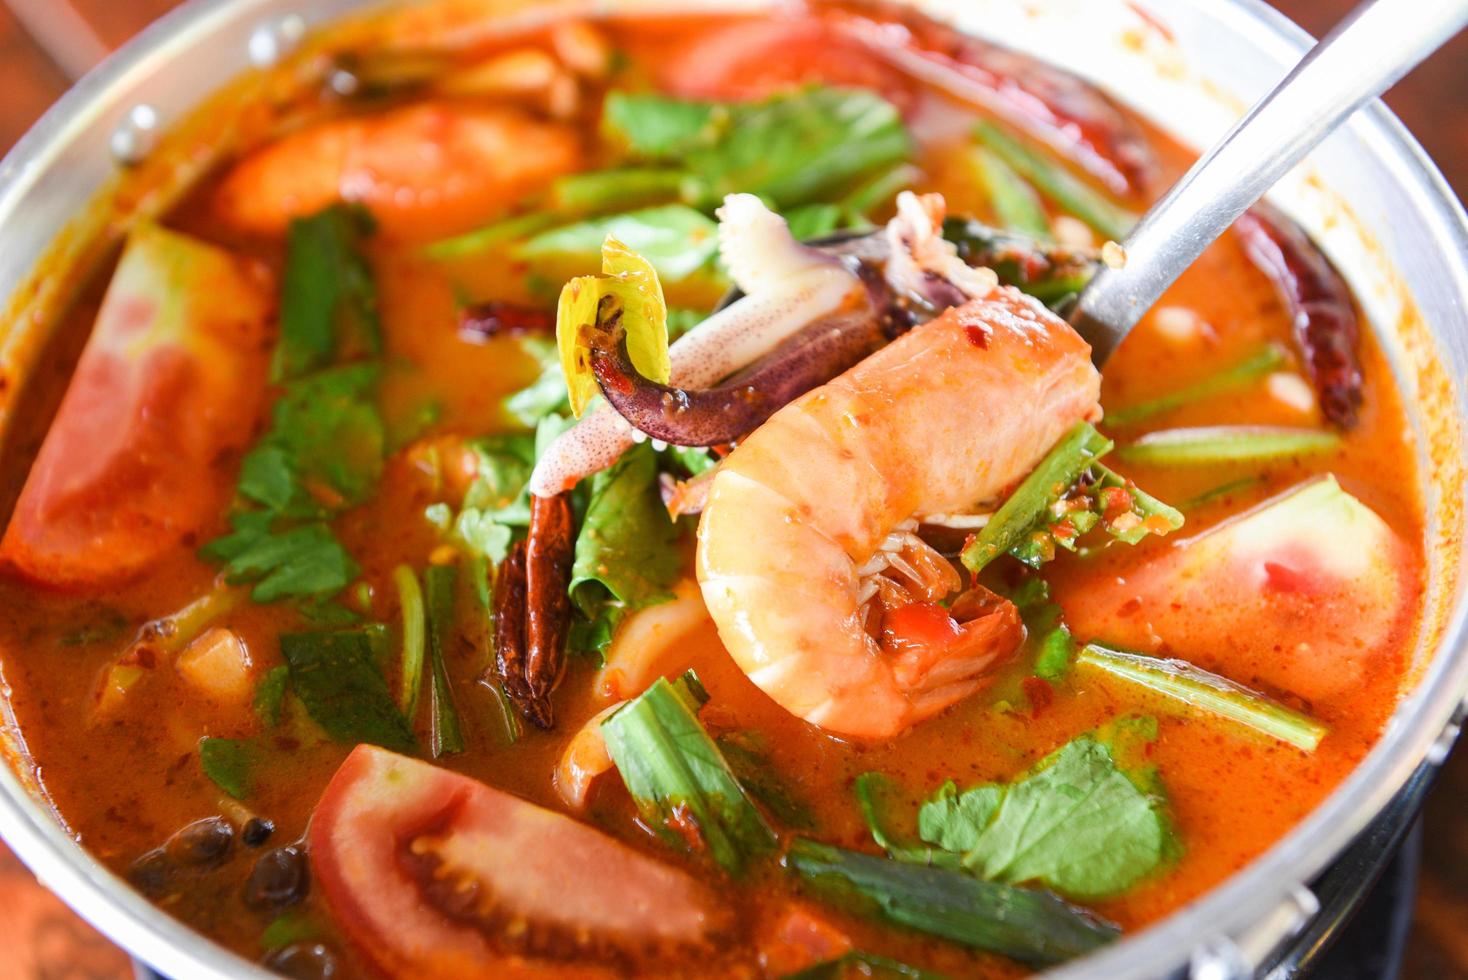 garnelensuppe, würzige suppe mit garnelen, meeresfrüchten, kokosmilch und chilipfeffer im topf, scharf-saure currygarnelen und tintenfisch thailändisches essen asiatisch foto